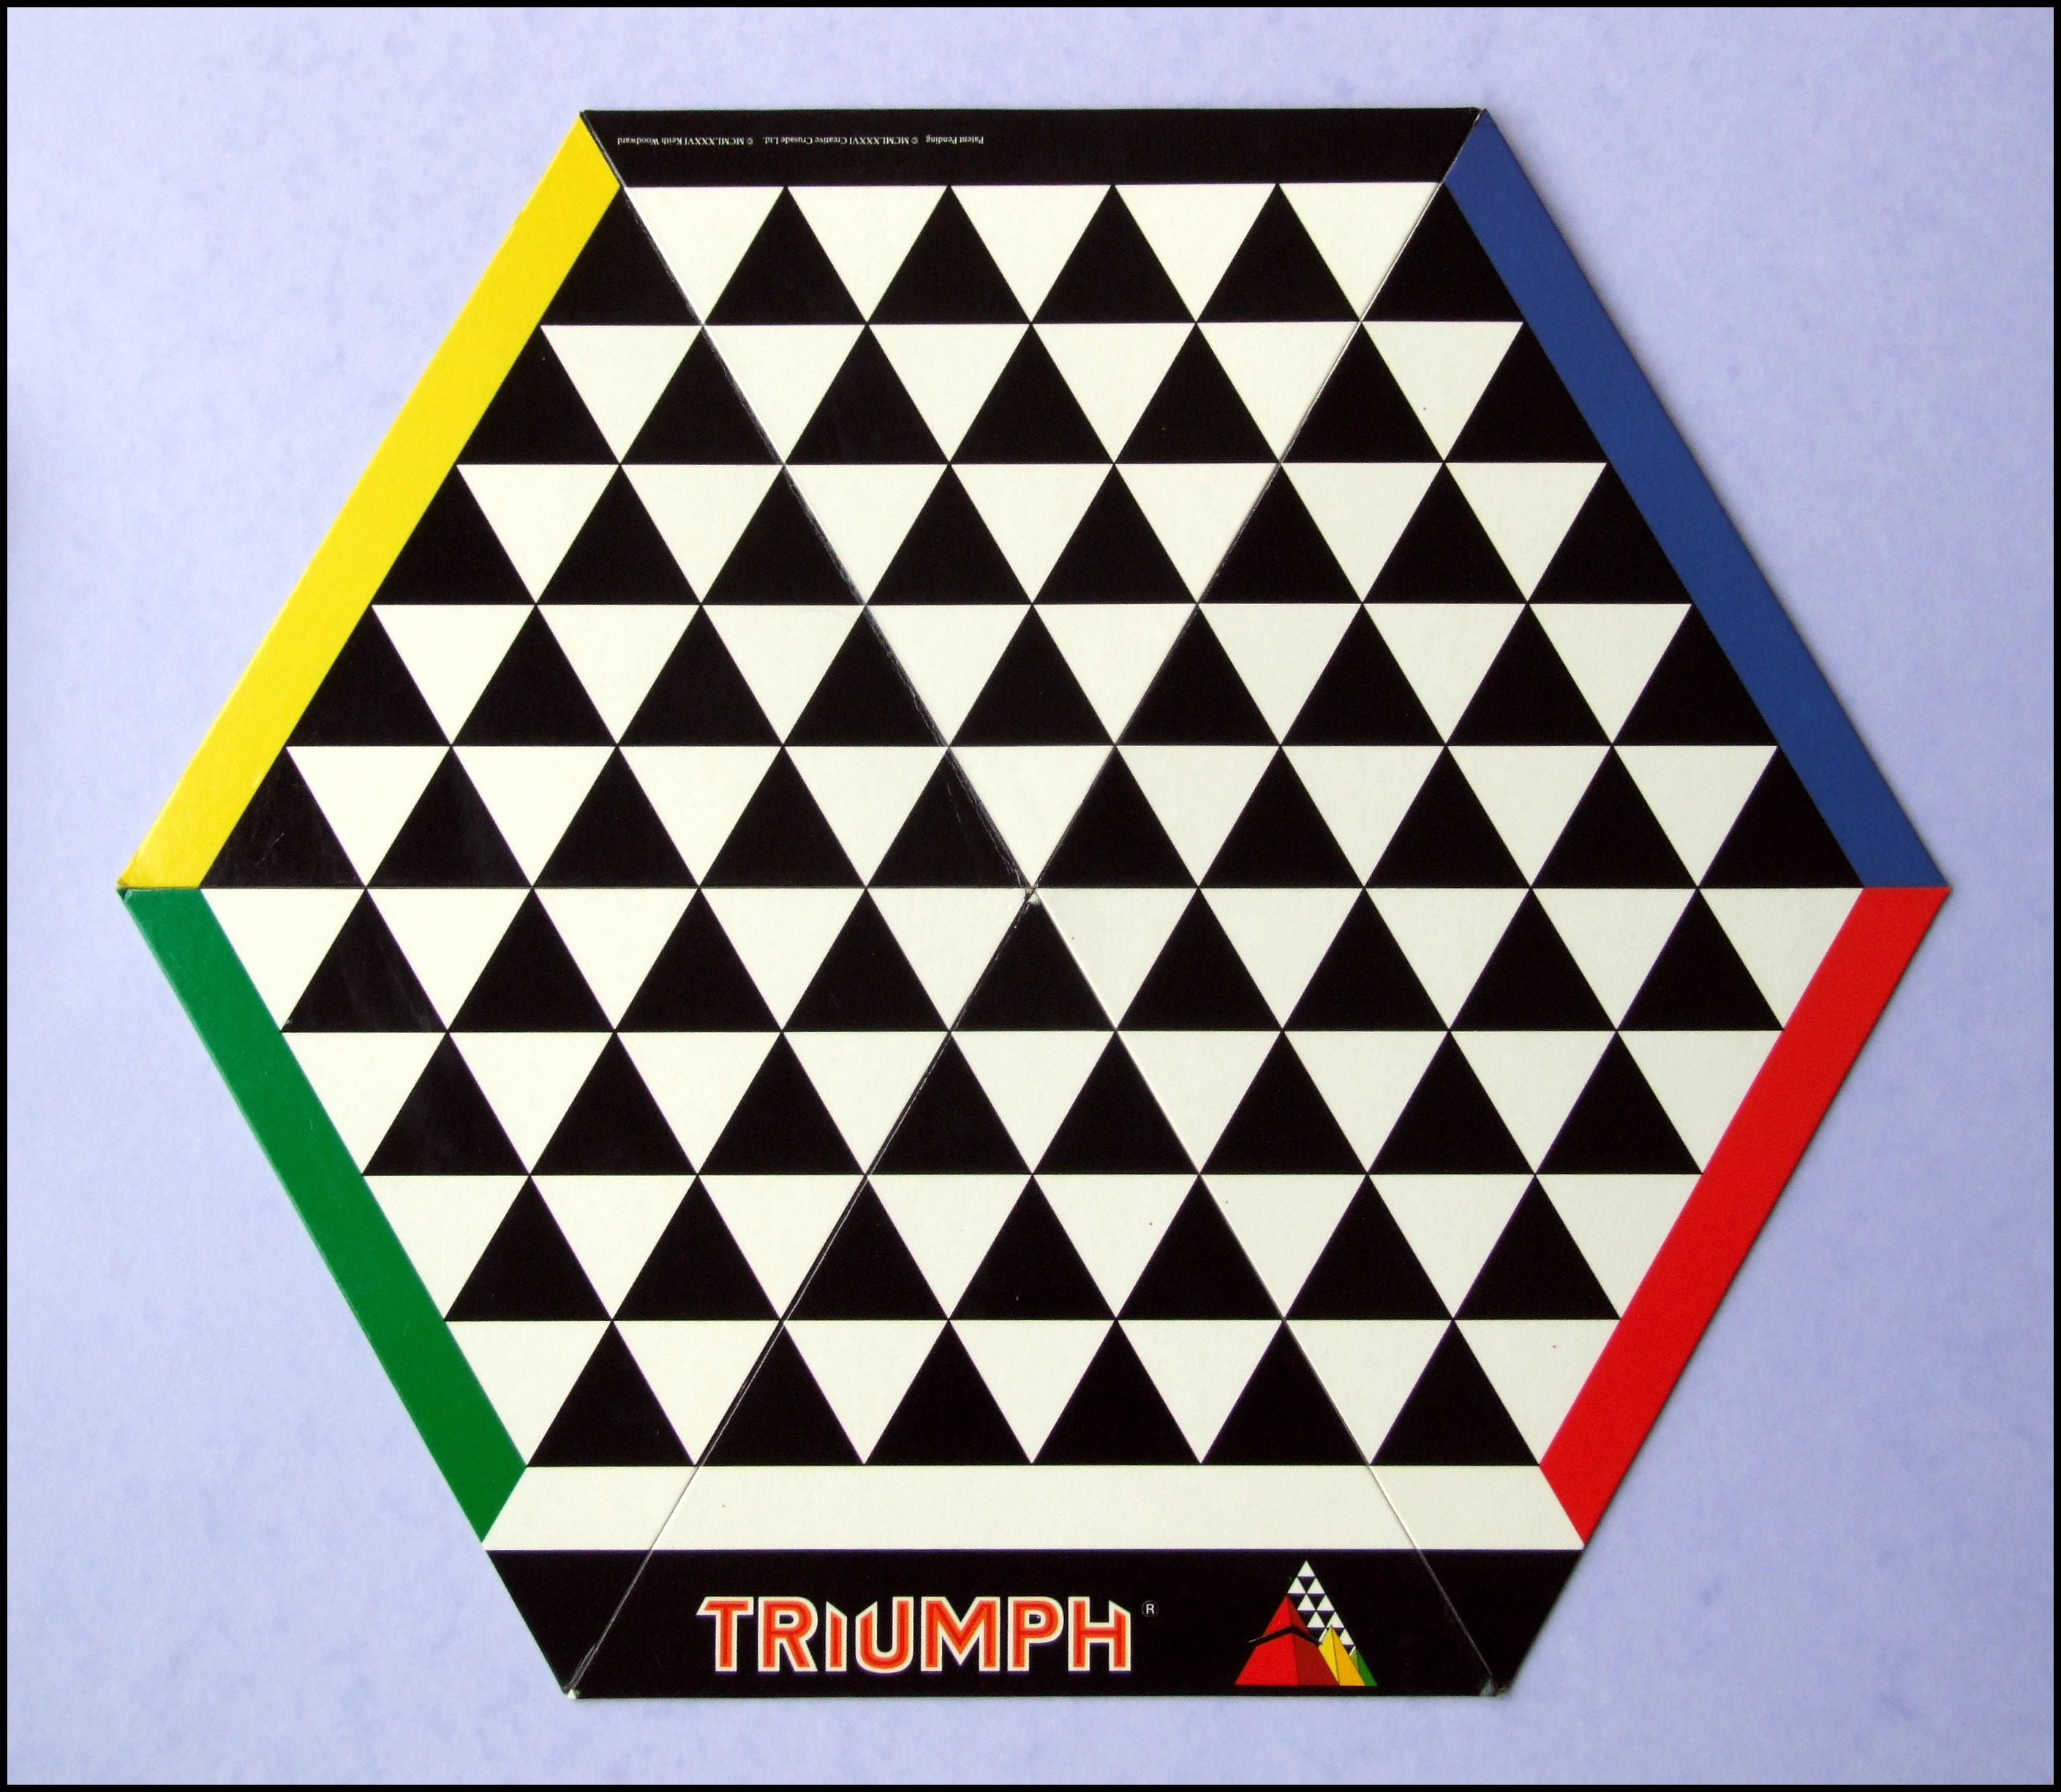 Triumph - The Four-Player Board